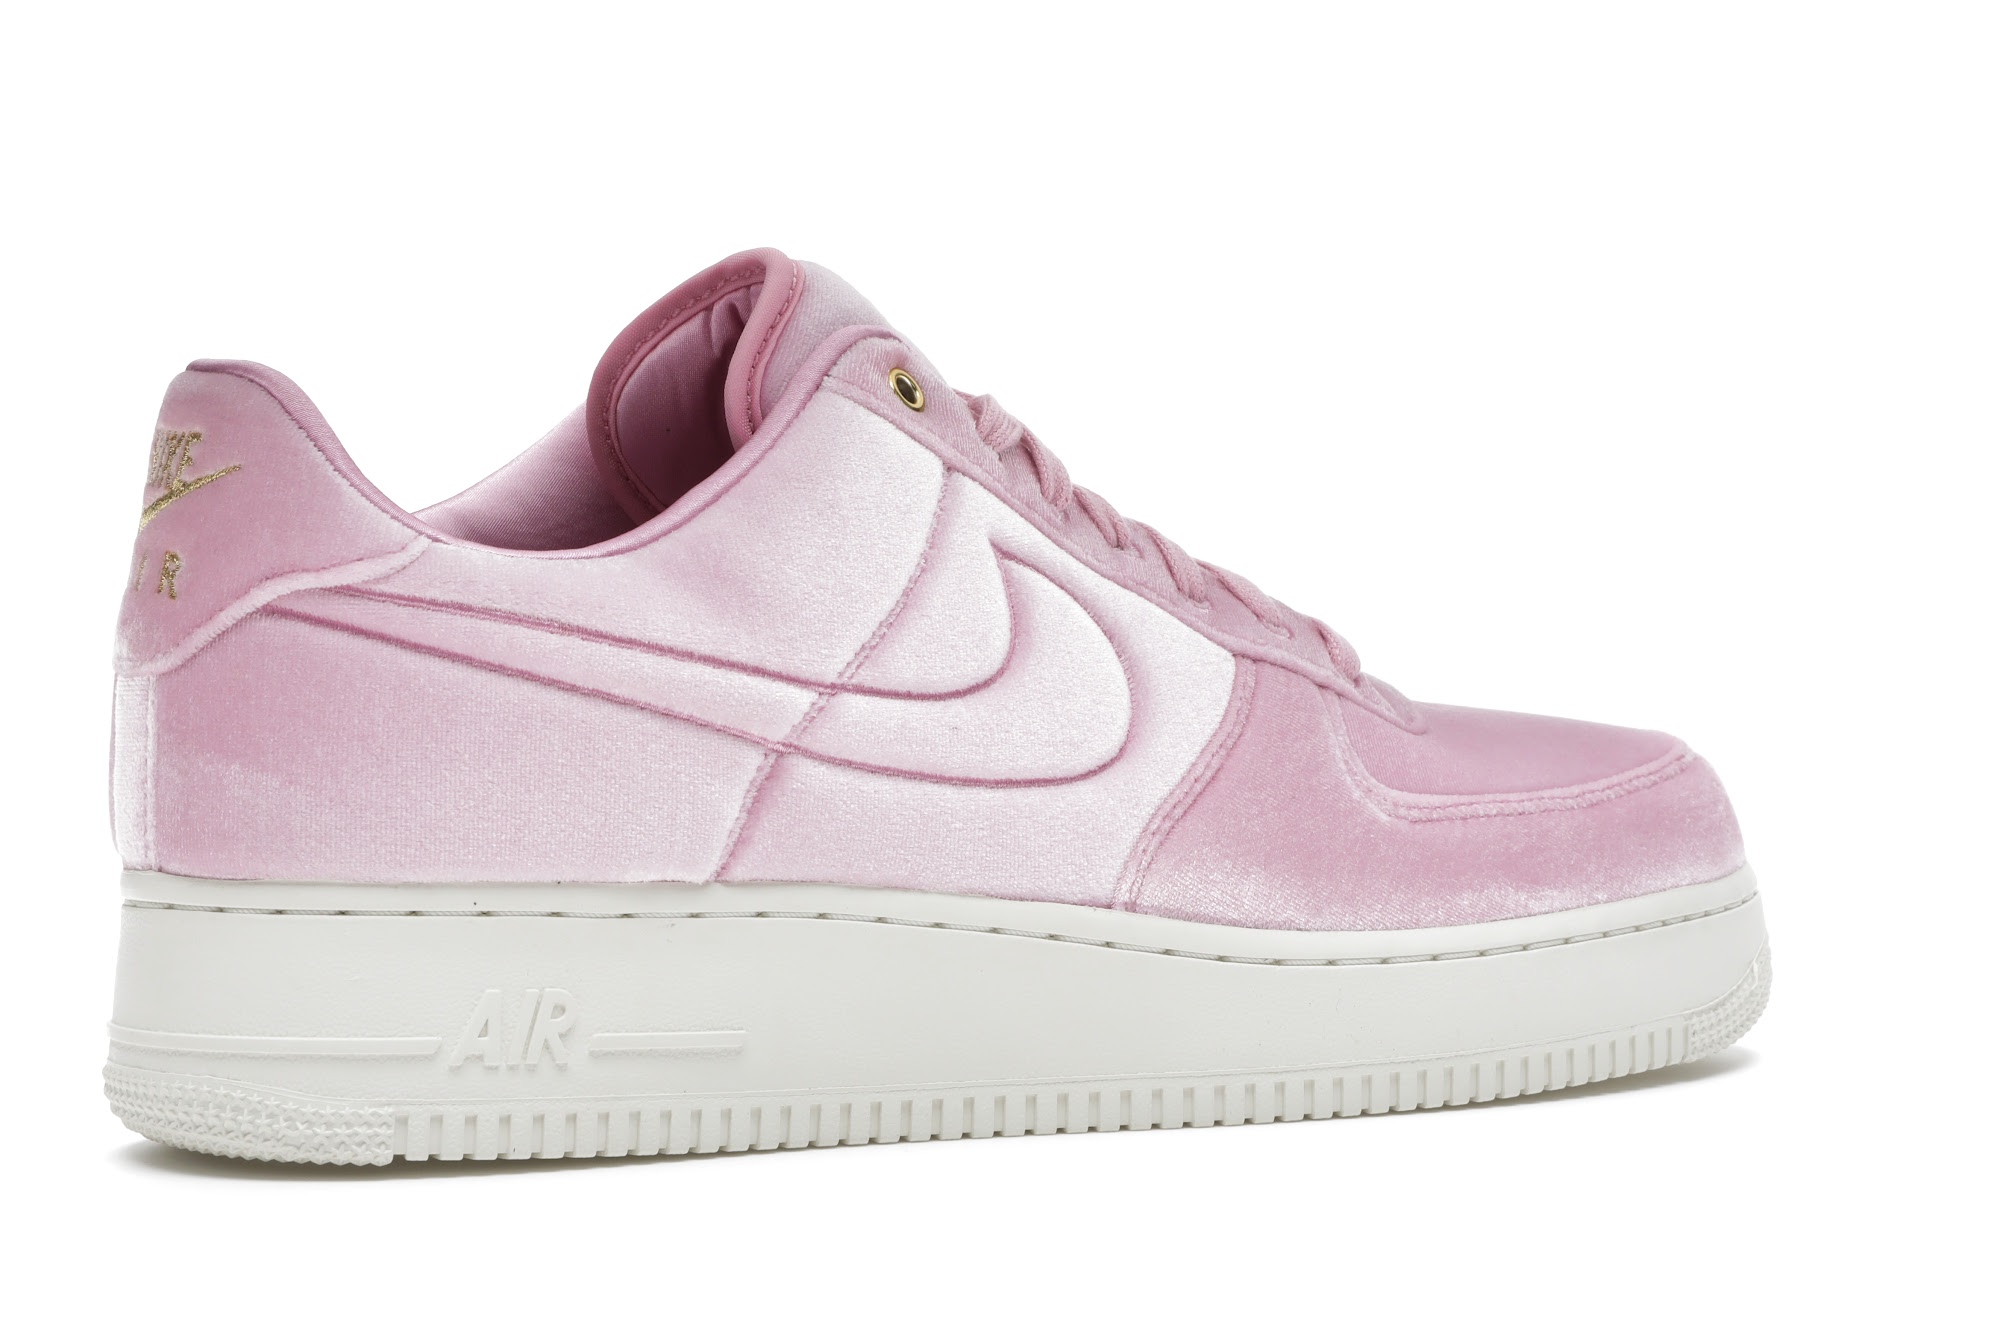 Nike Air Force 1 Low Premium 3 Velour Pink Rise - AT4144-600